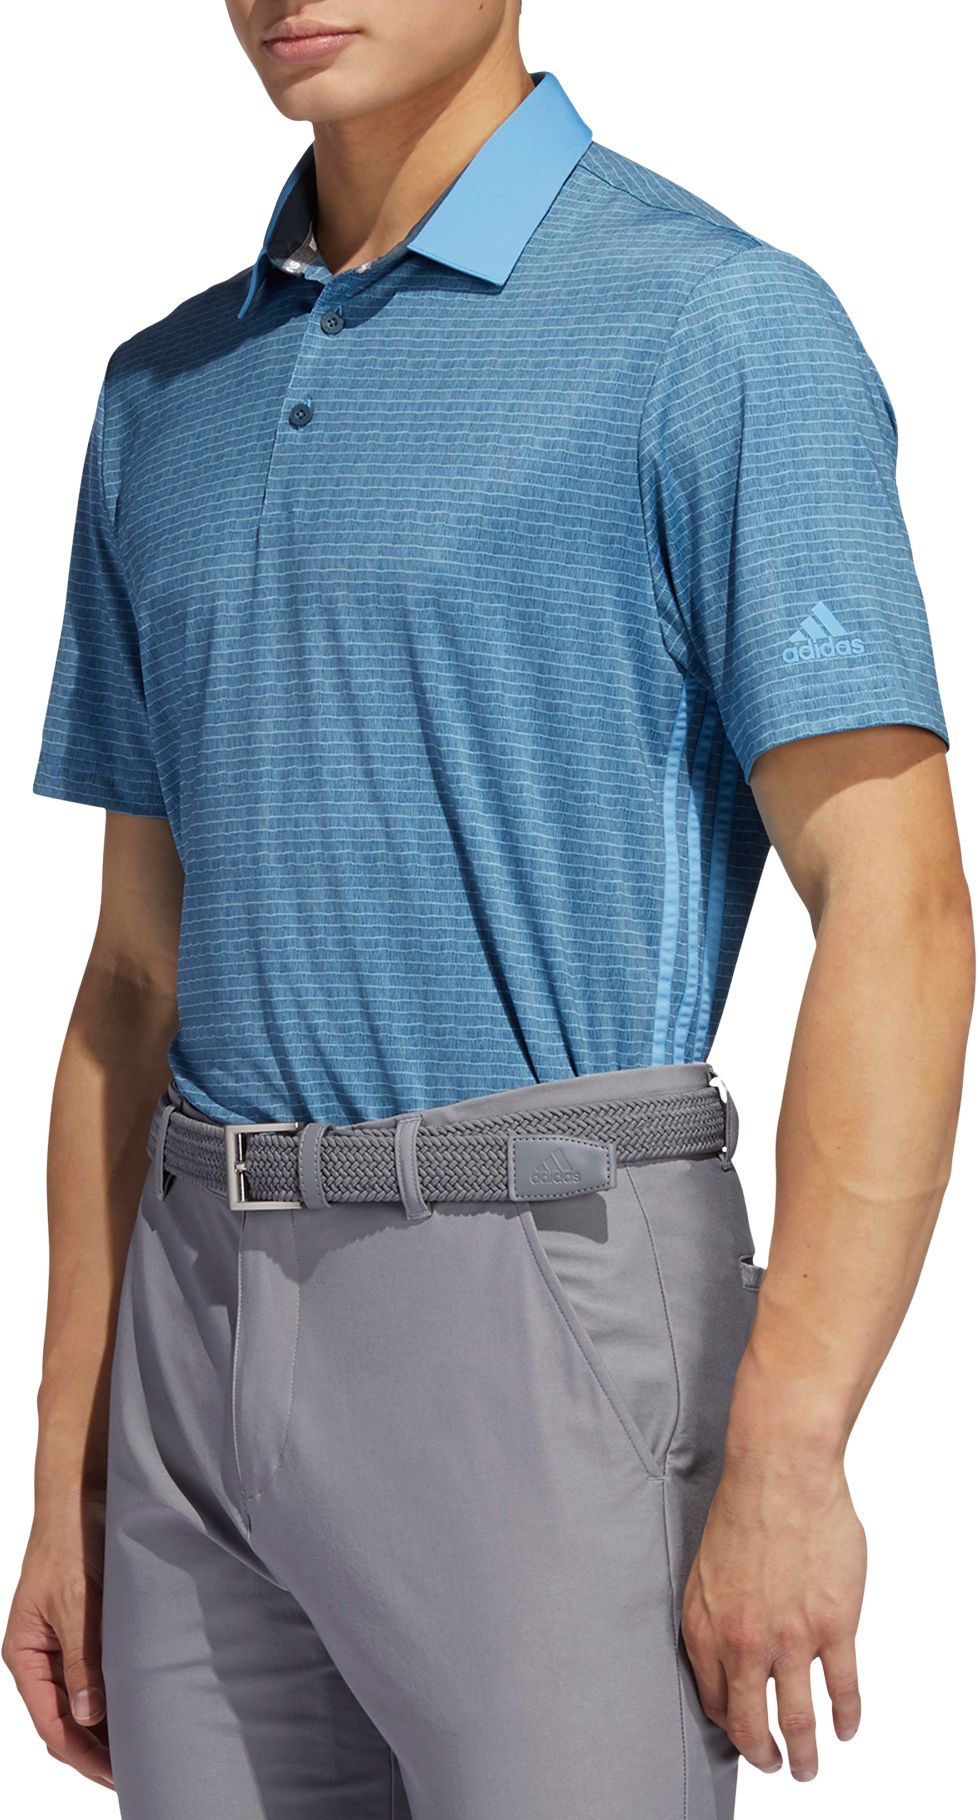 adidas men's ultimate365 logo golf polo